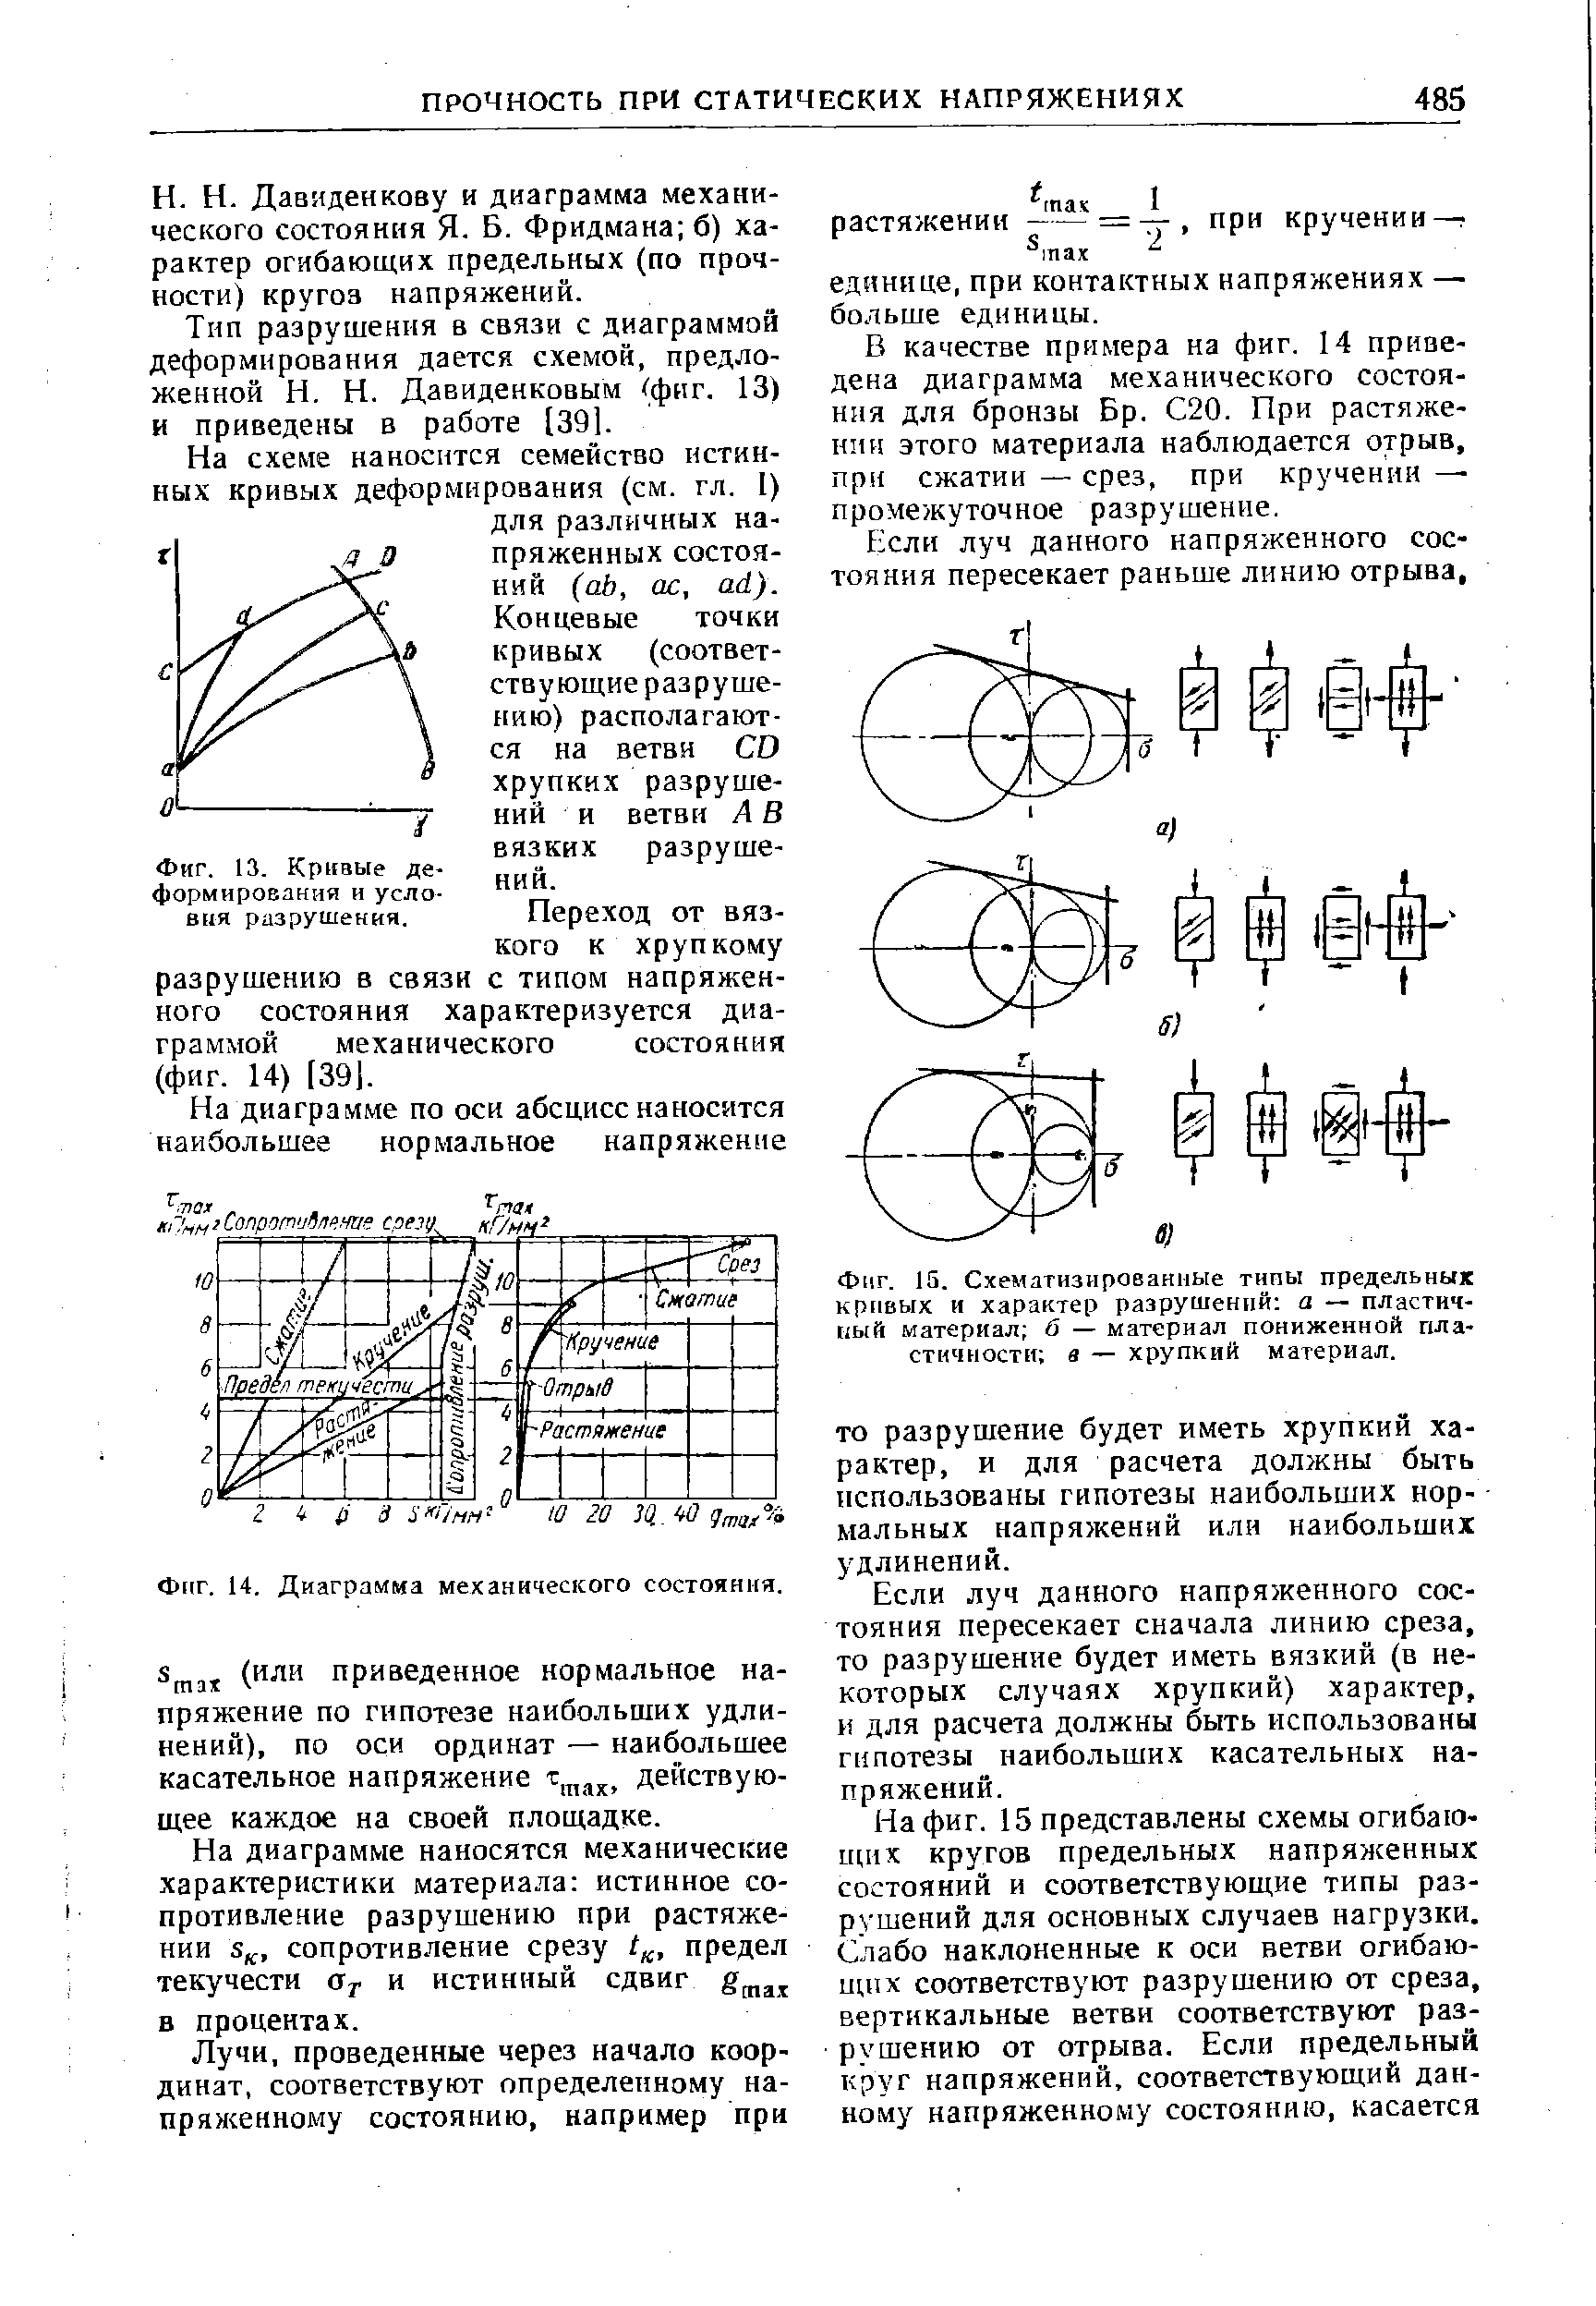 Фиг. 14. Диаграмма механического состояния.
